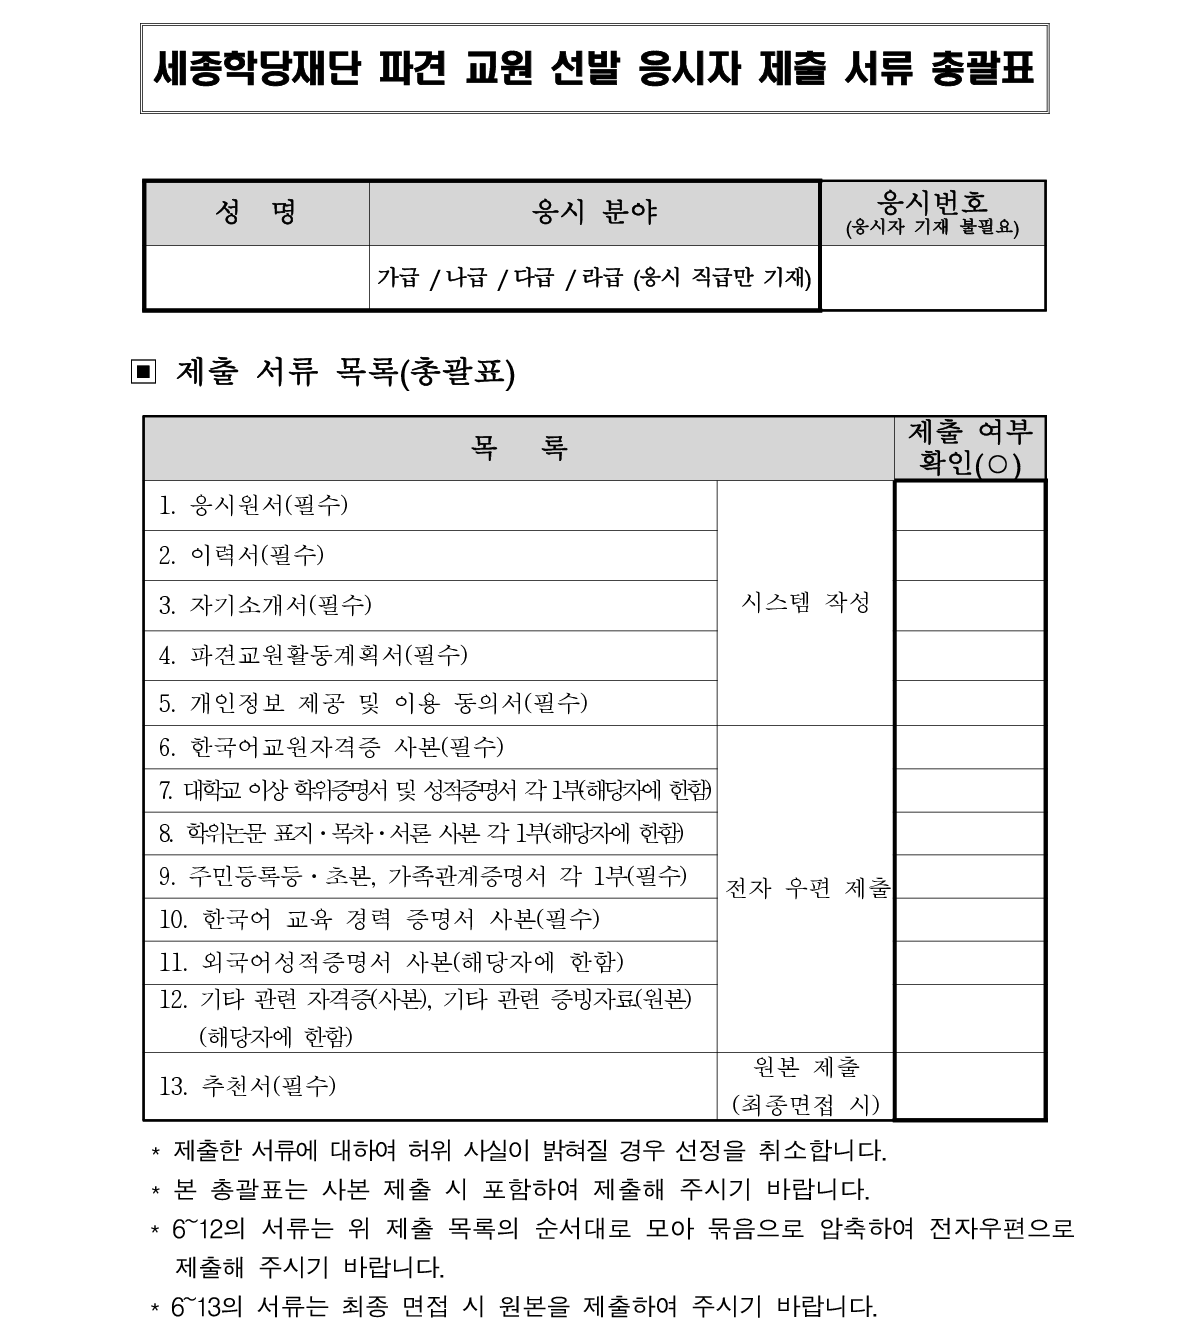 2019년 세종학당 해외 파견 한국어 교원 선발 공고_9